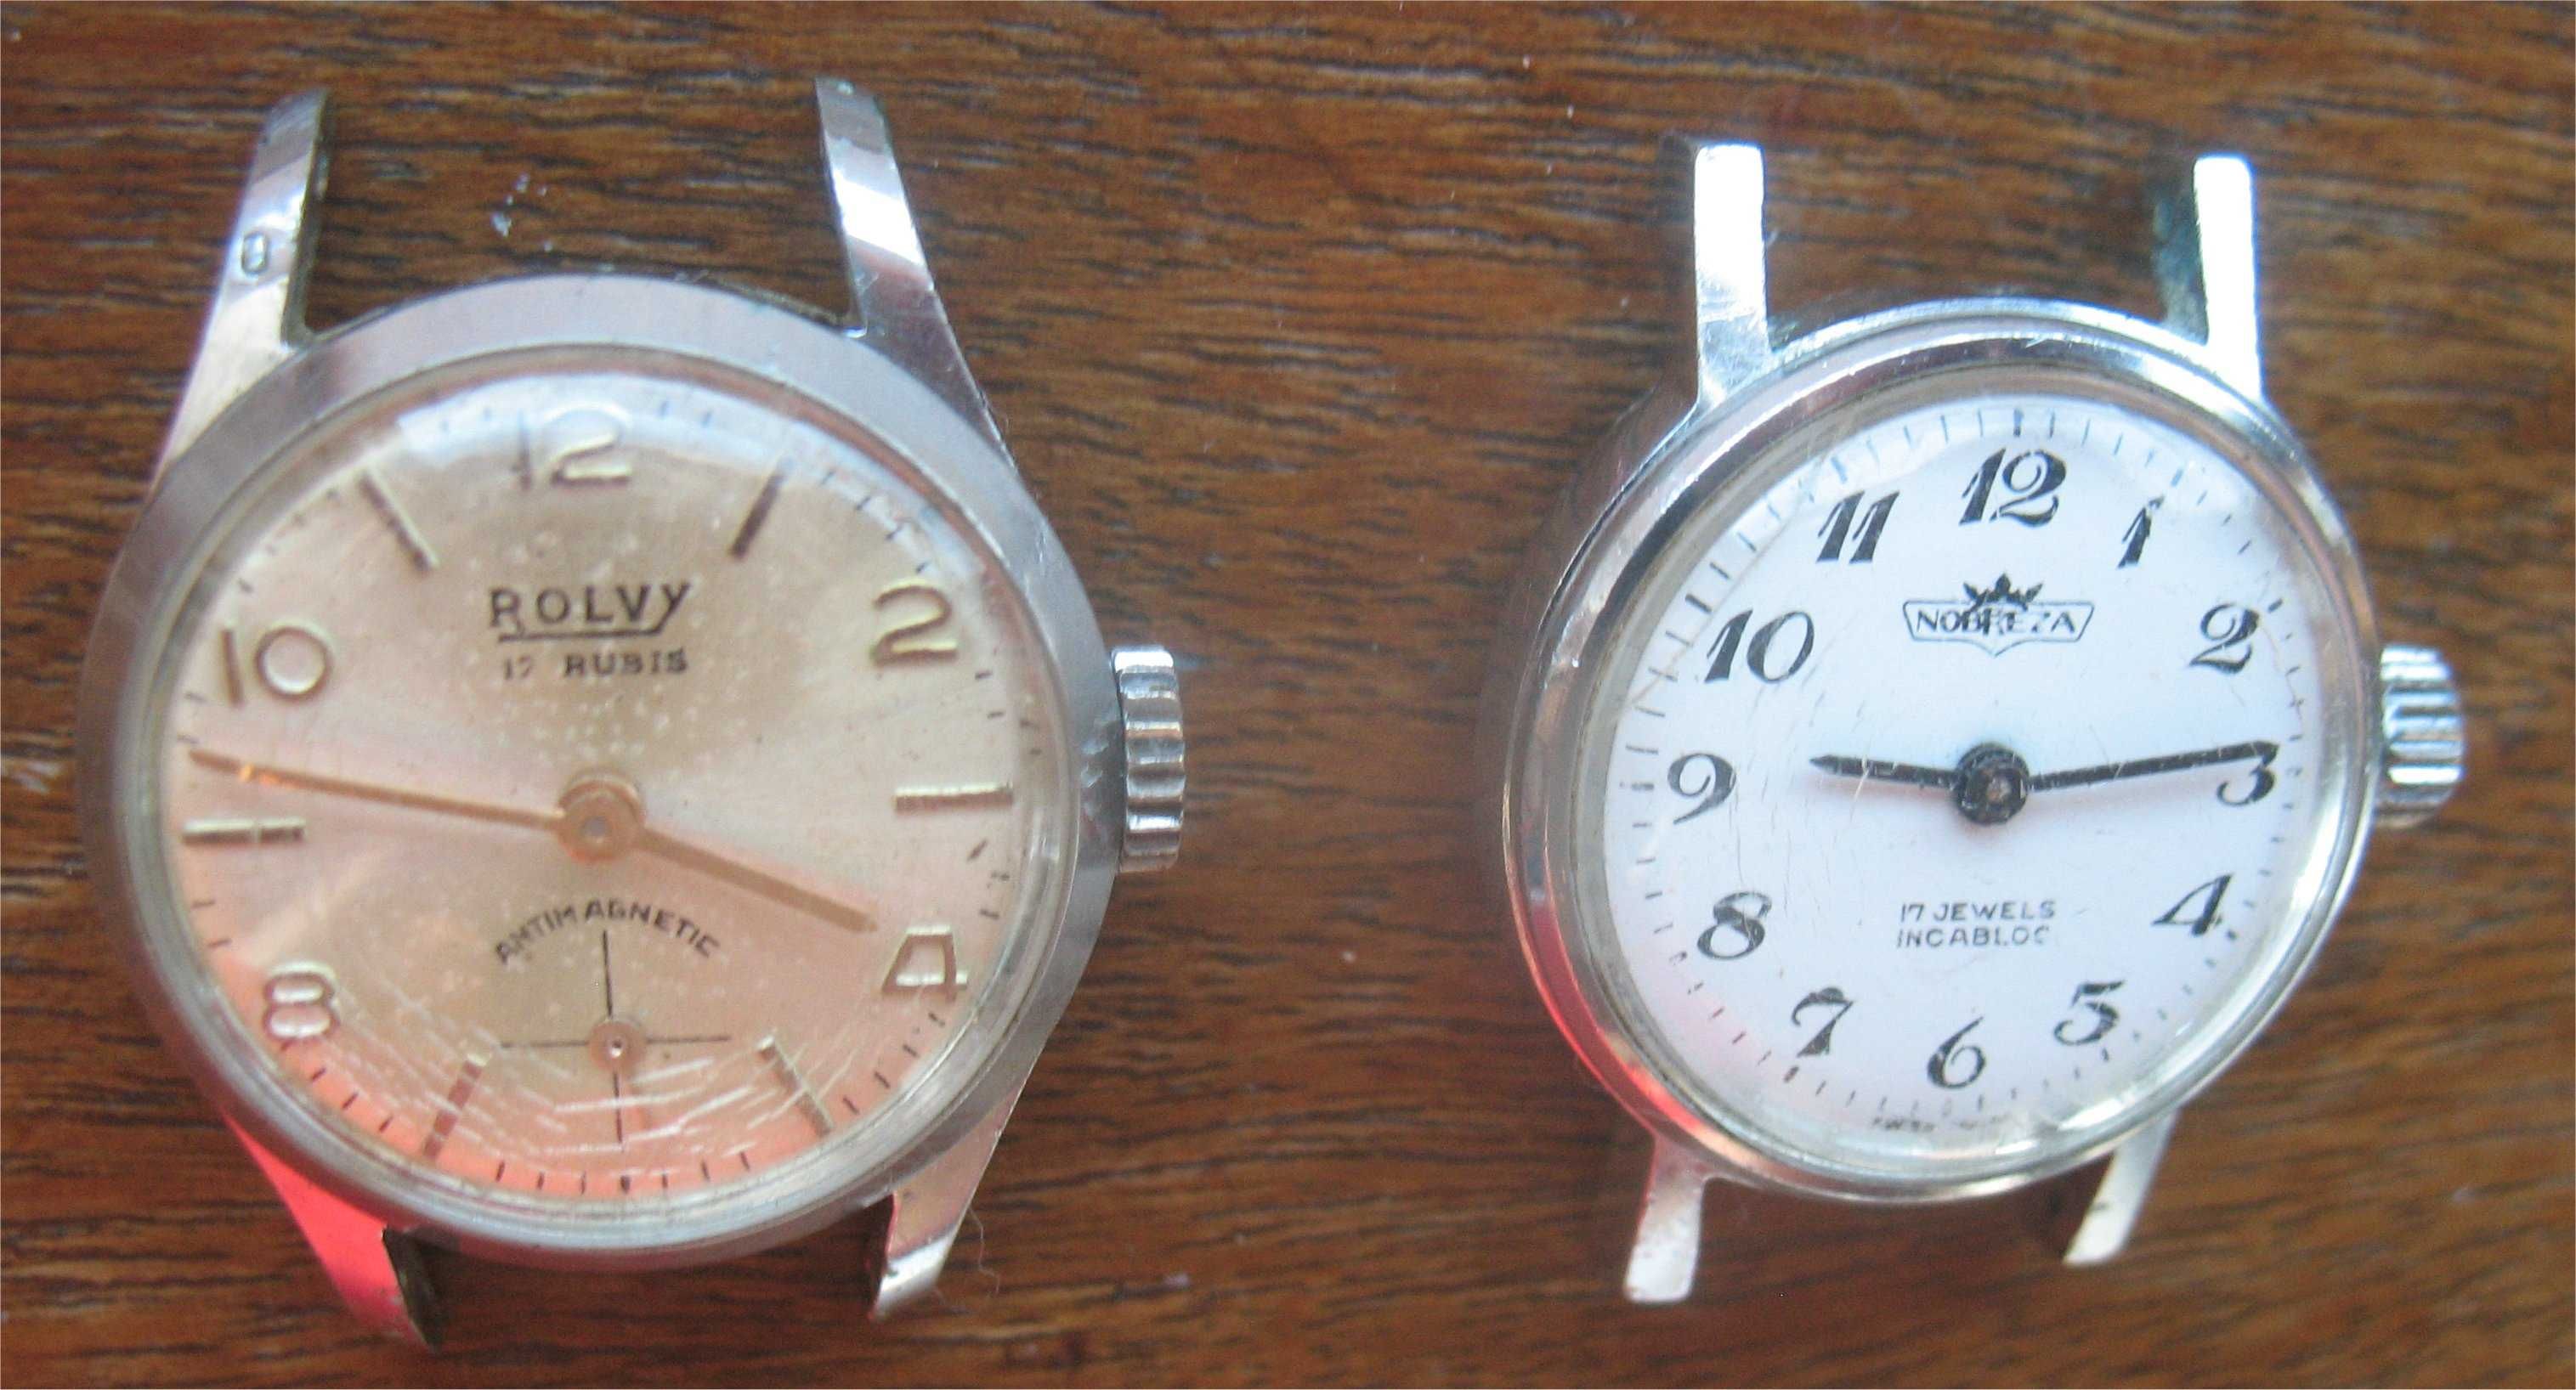 2 Relógios Vintage de Corda - Rolvy 17 Rubis + Nobreza 17 Jewels